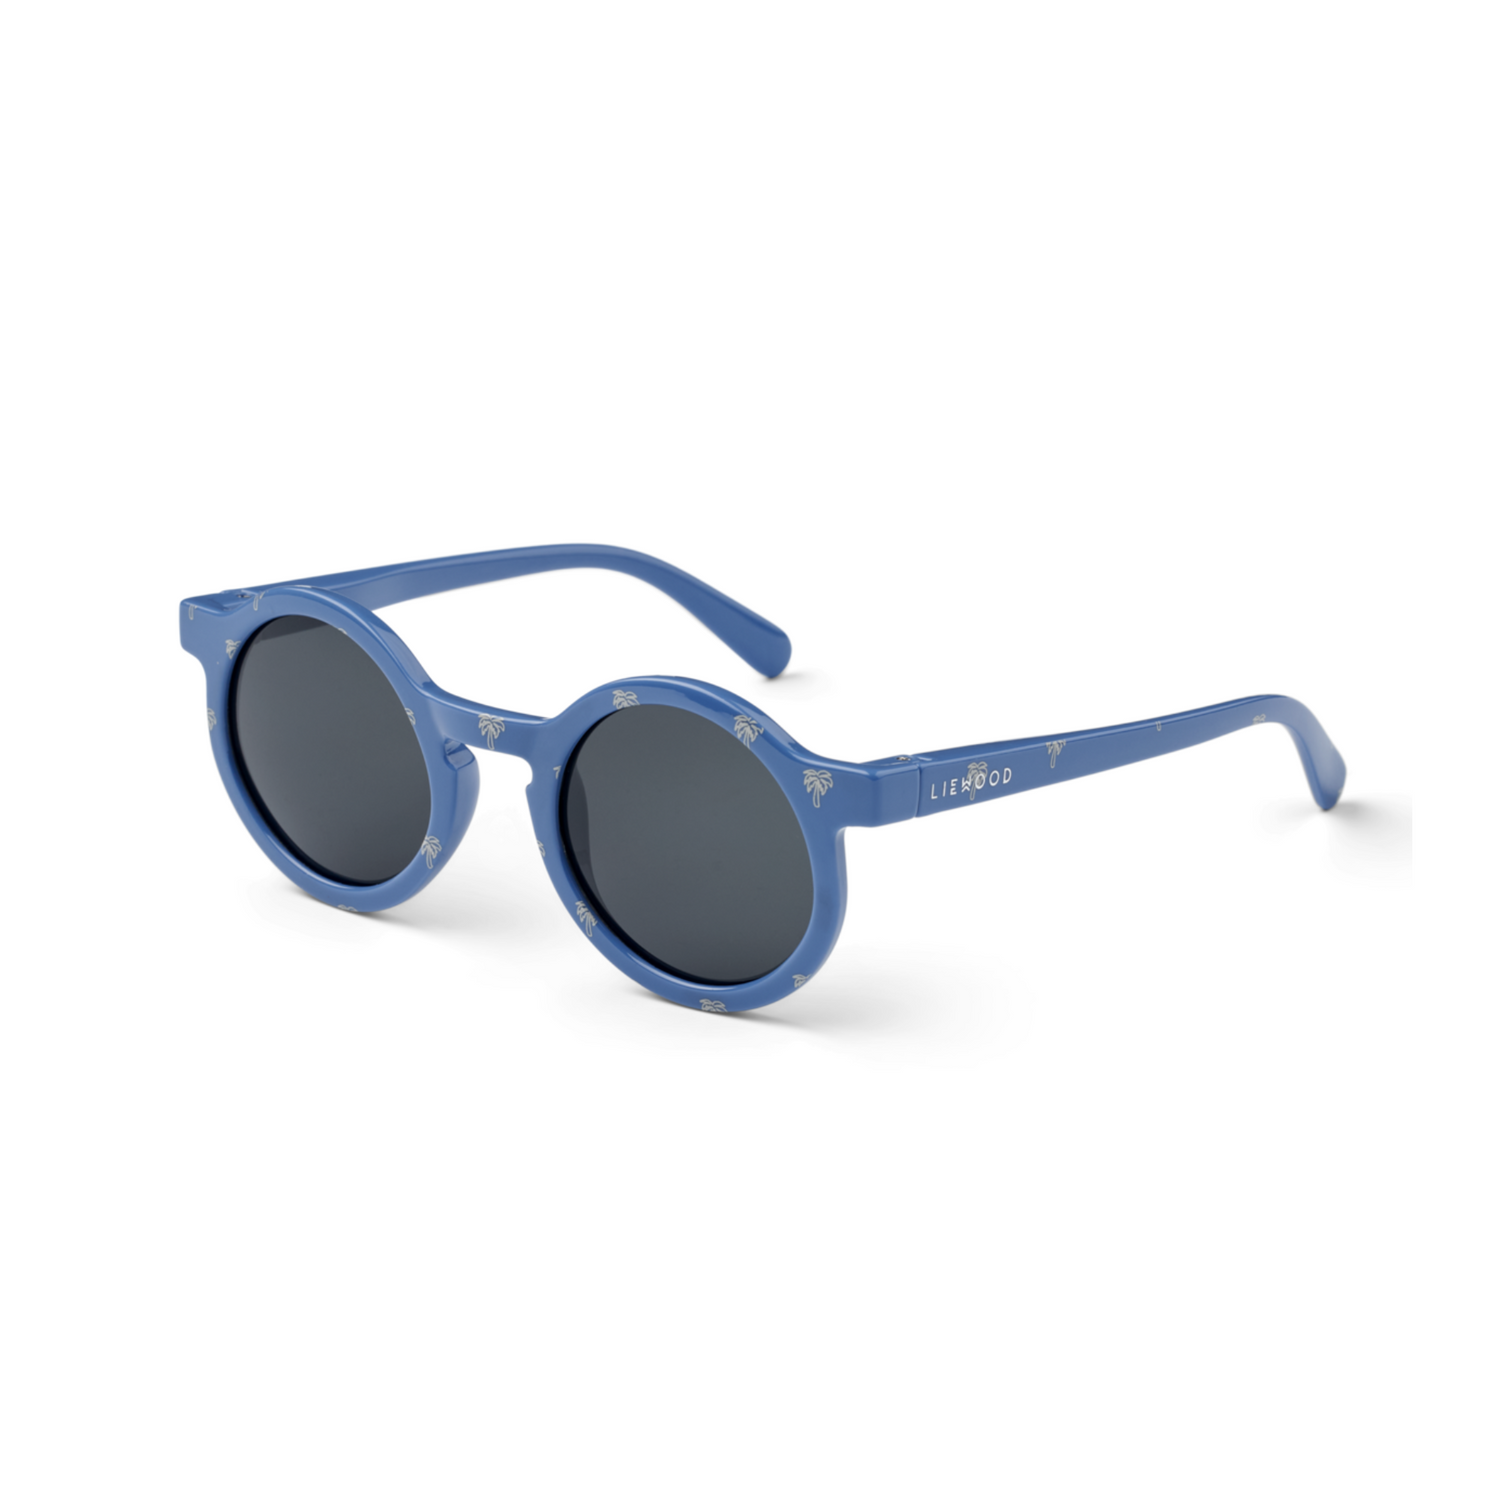 Sonnenbrille - Darla, Palms/Riverside, UV-Schutz